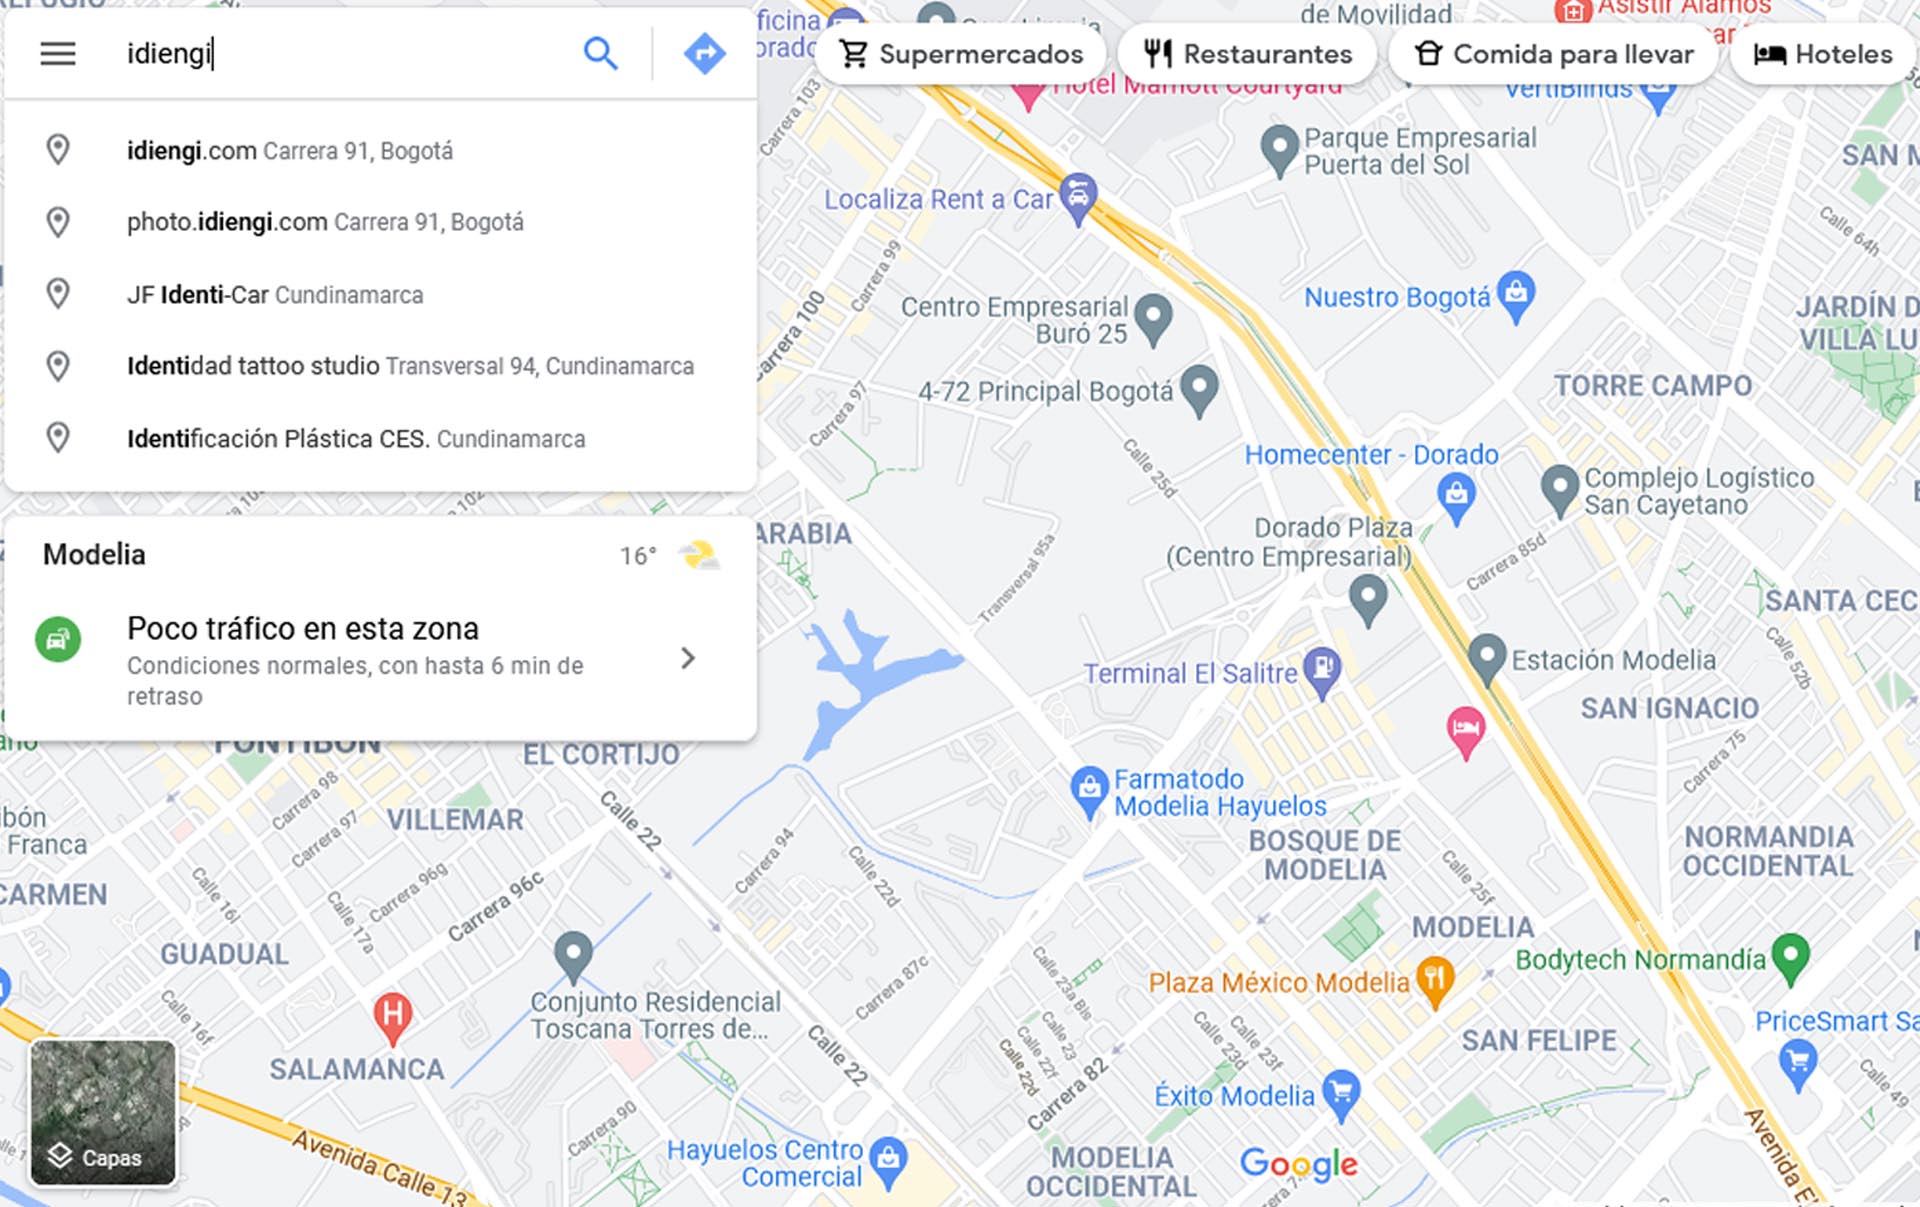 La busqueda es solo entre empresas que esten presentes en Google Maps<